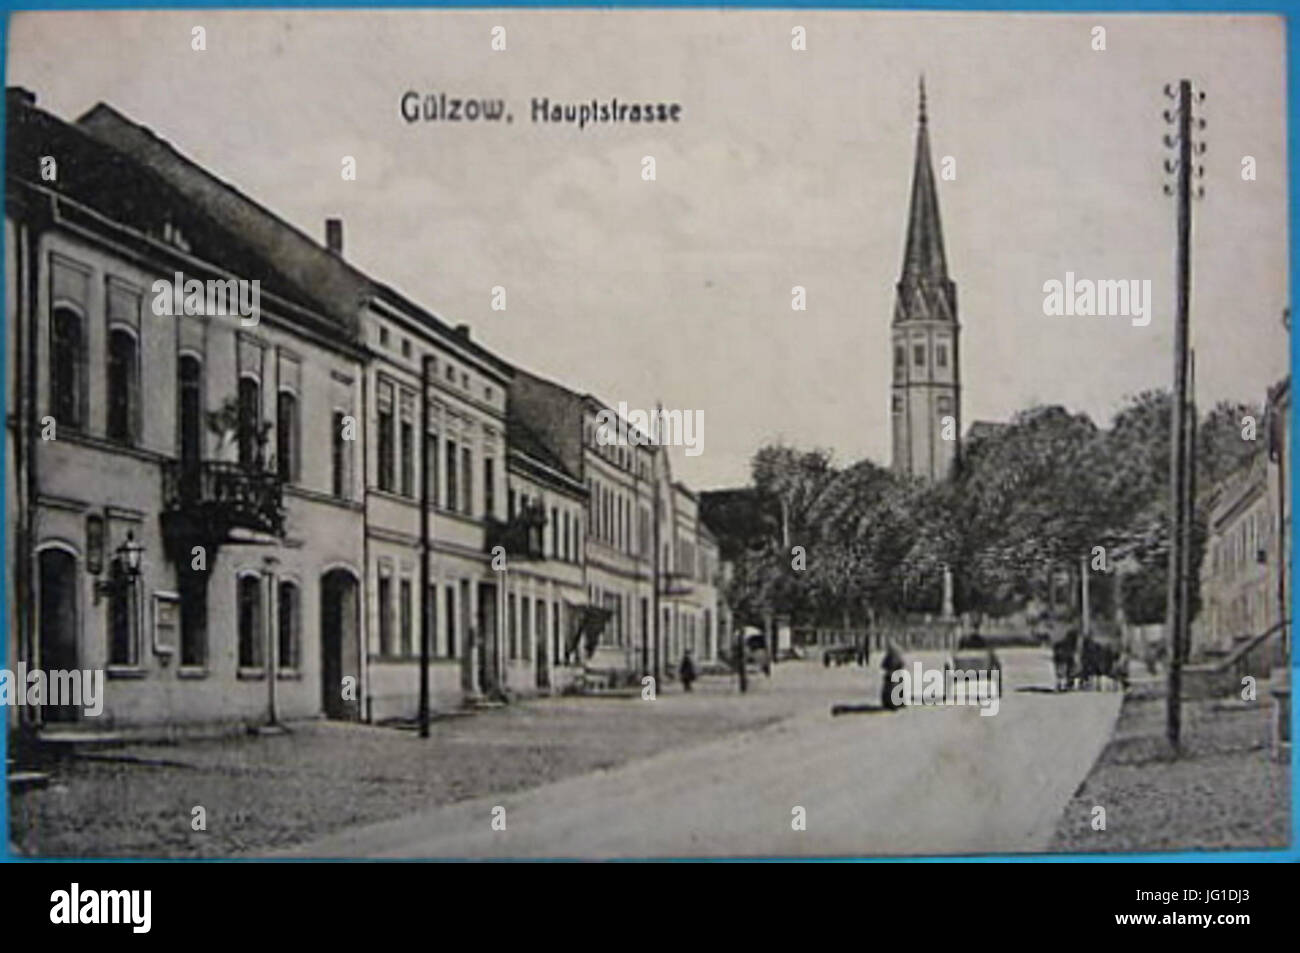 Gülzow - Hauptstrasse 2 Stock Photo